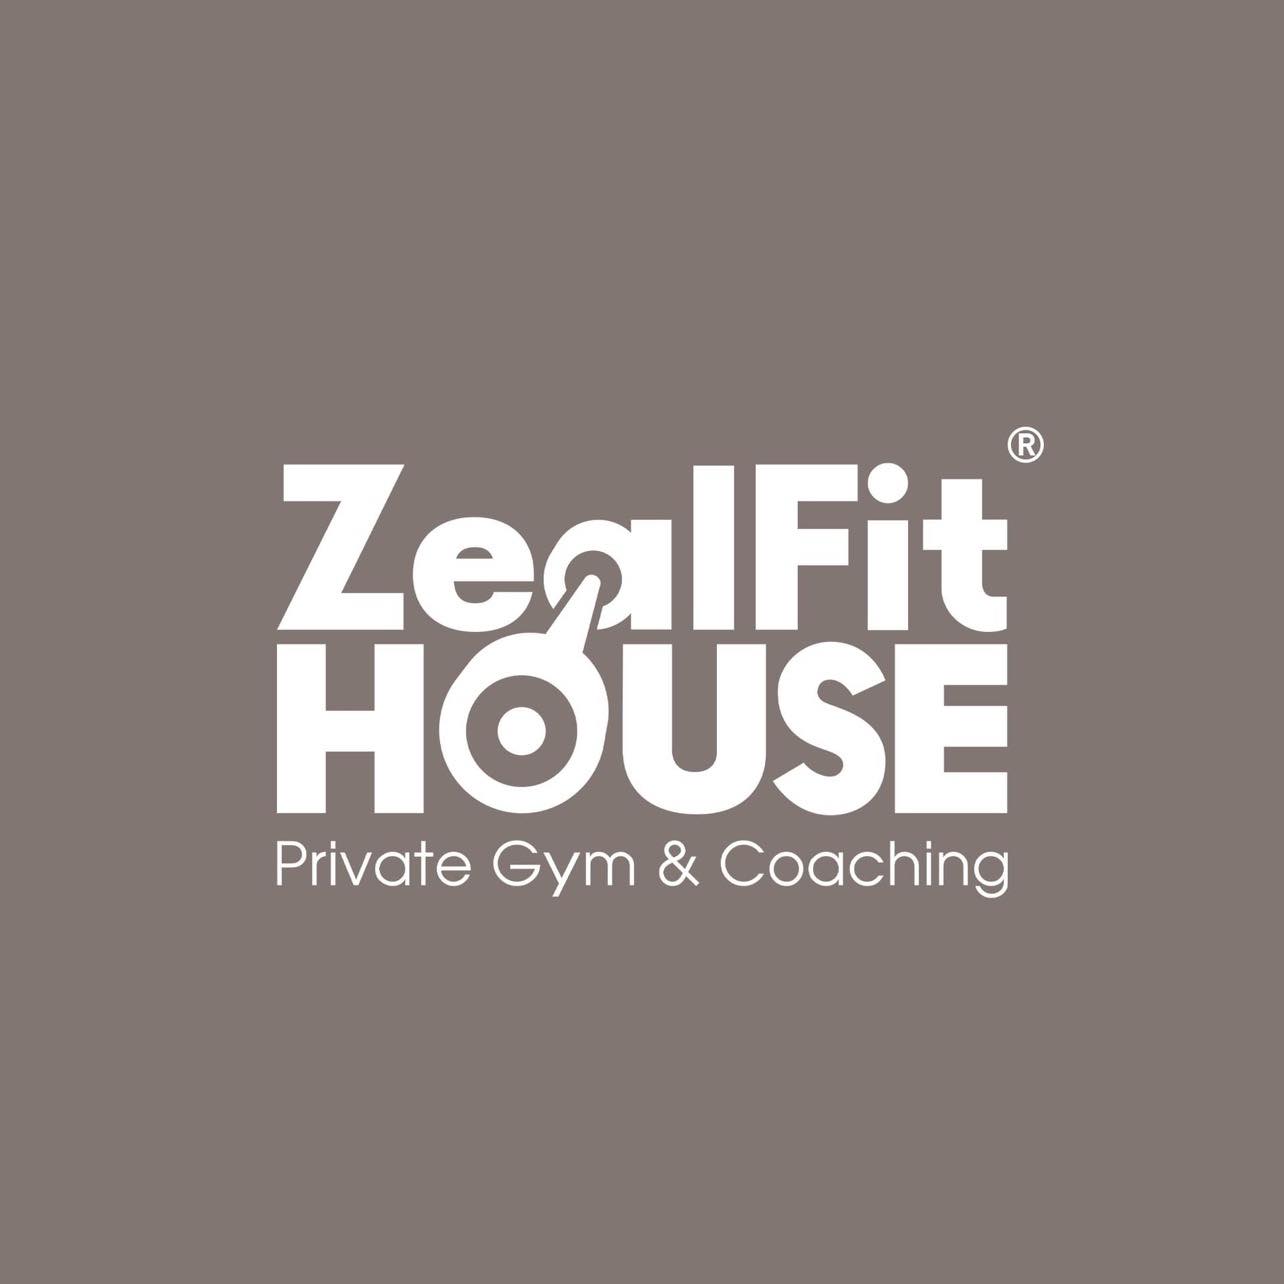 ZealFit House – Gym & Coaching